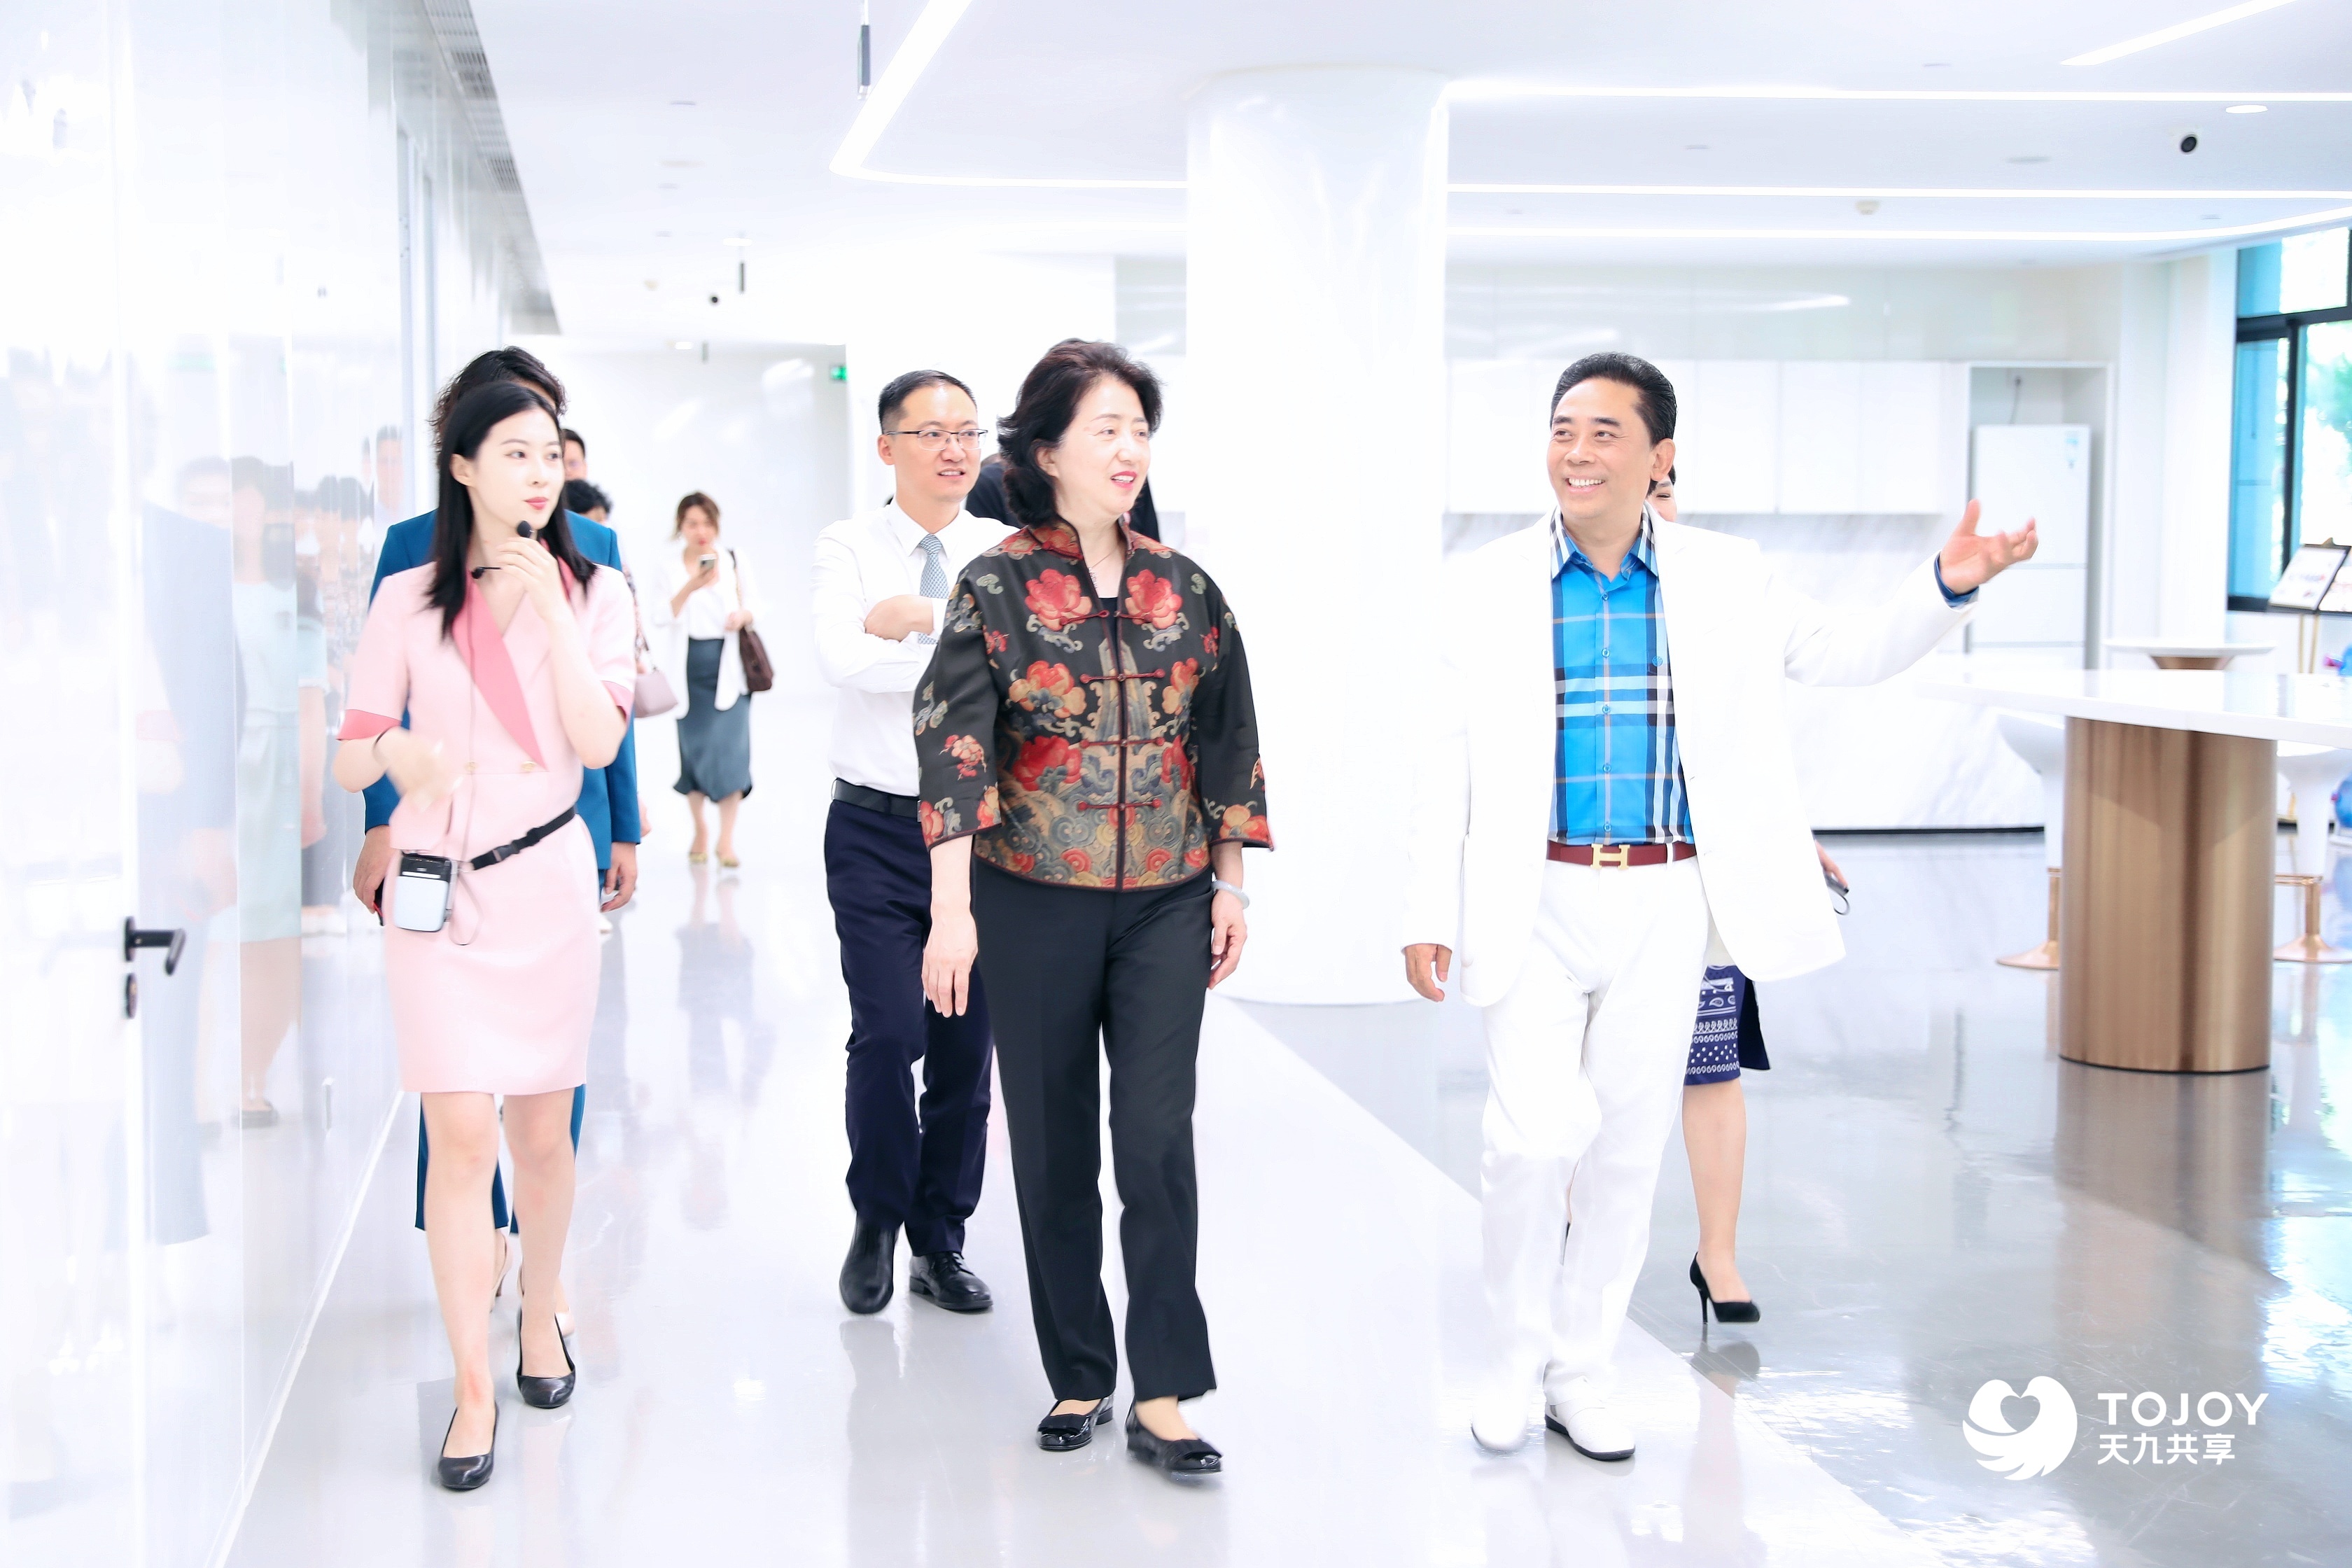 氧吧酒店项目获中国旅游饭店业协会高度认可